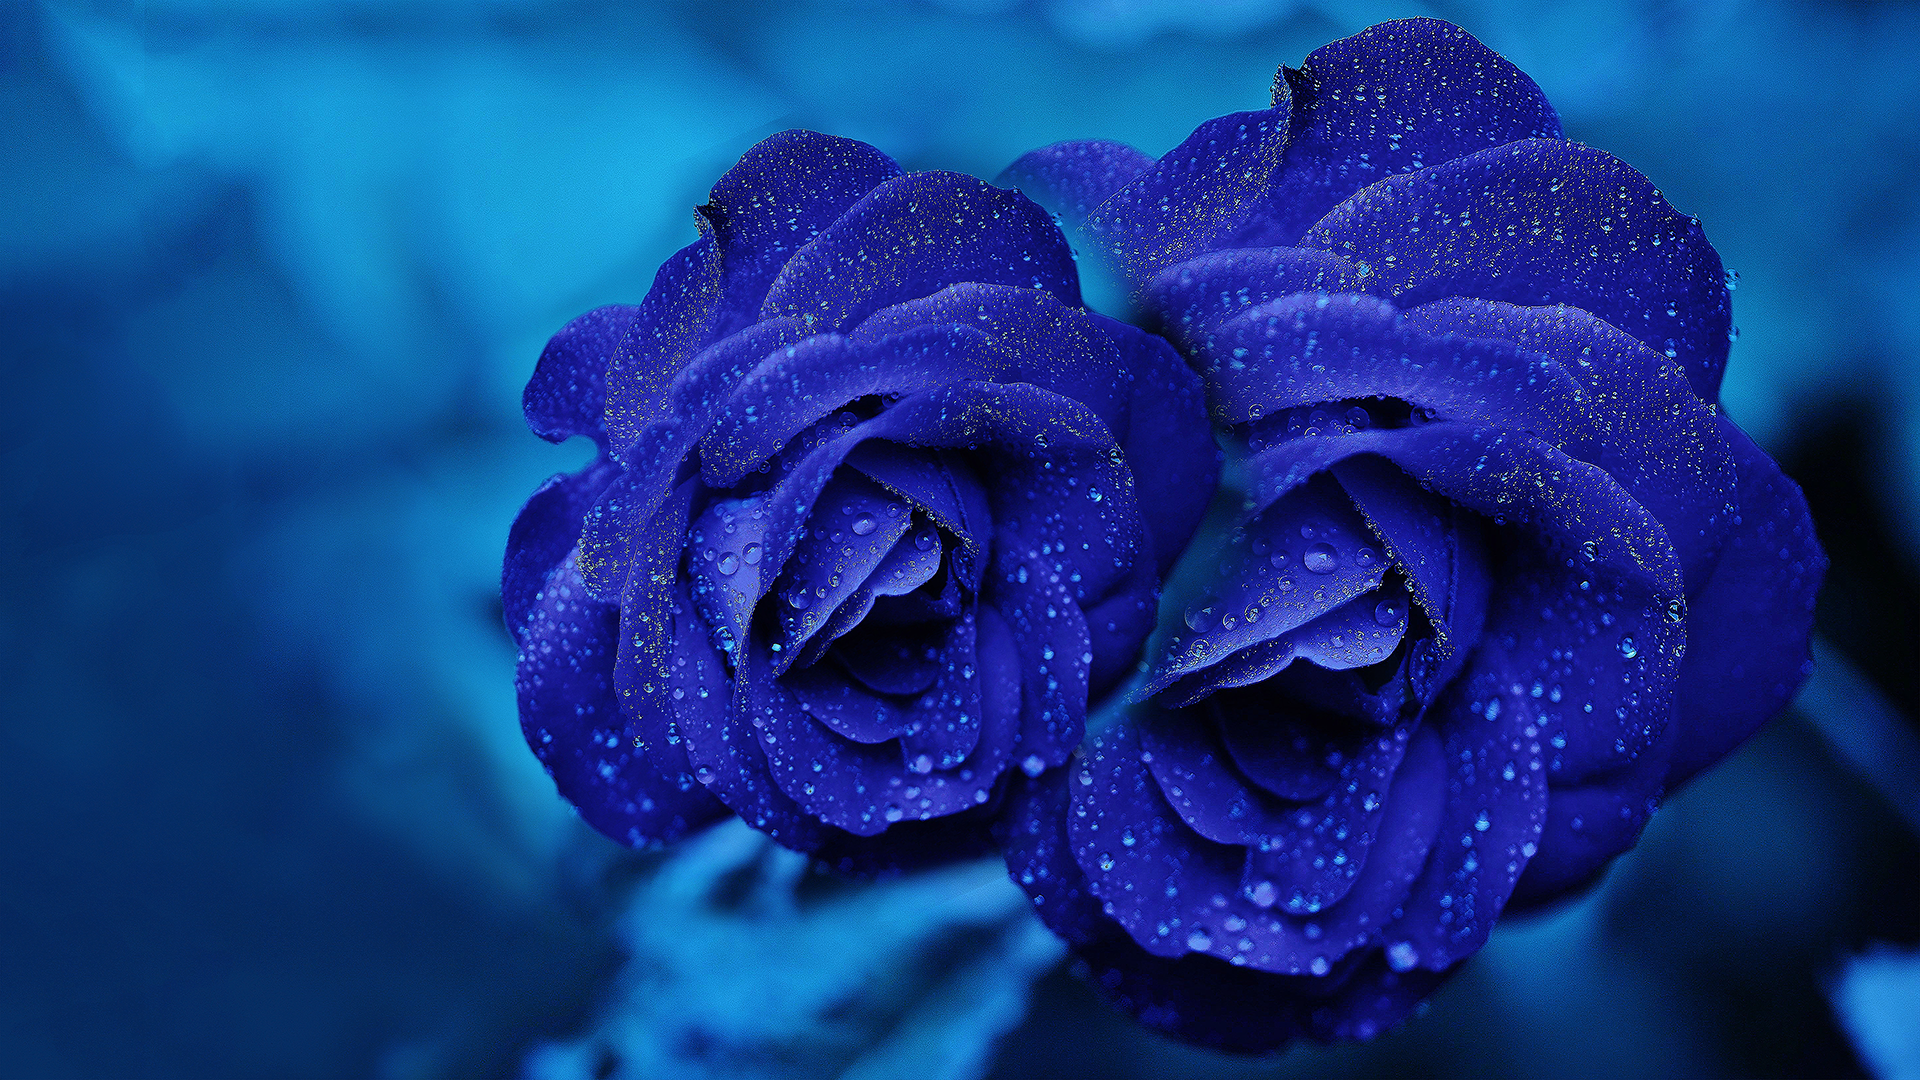 desktop wallpaper collections,flower,rose,blue,flowering plant,blue rose